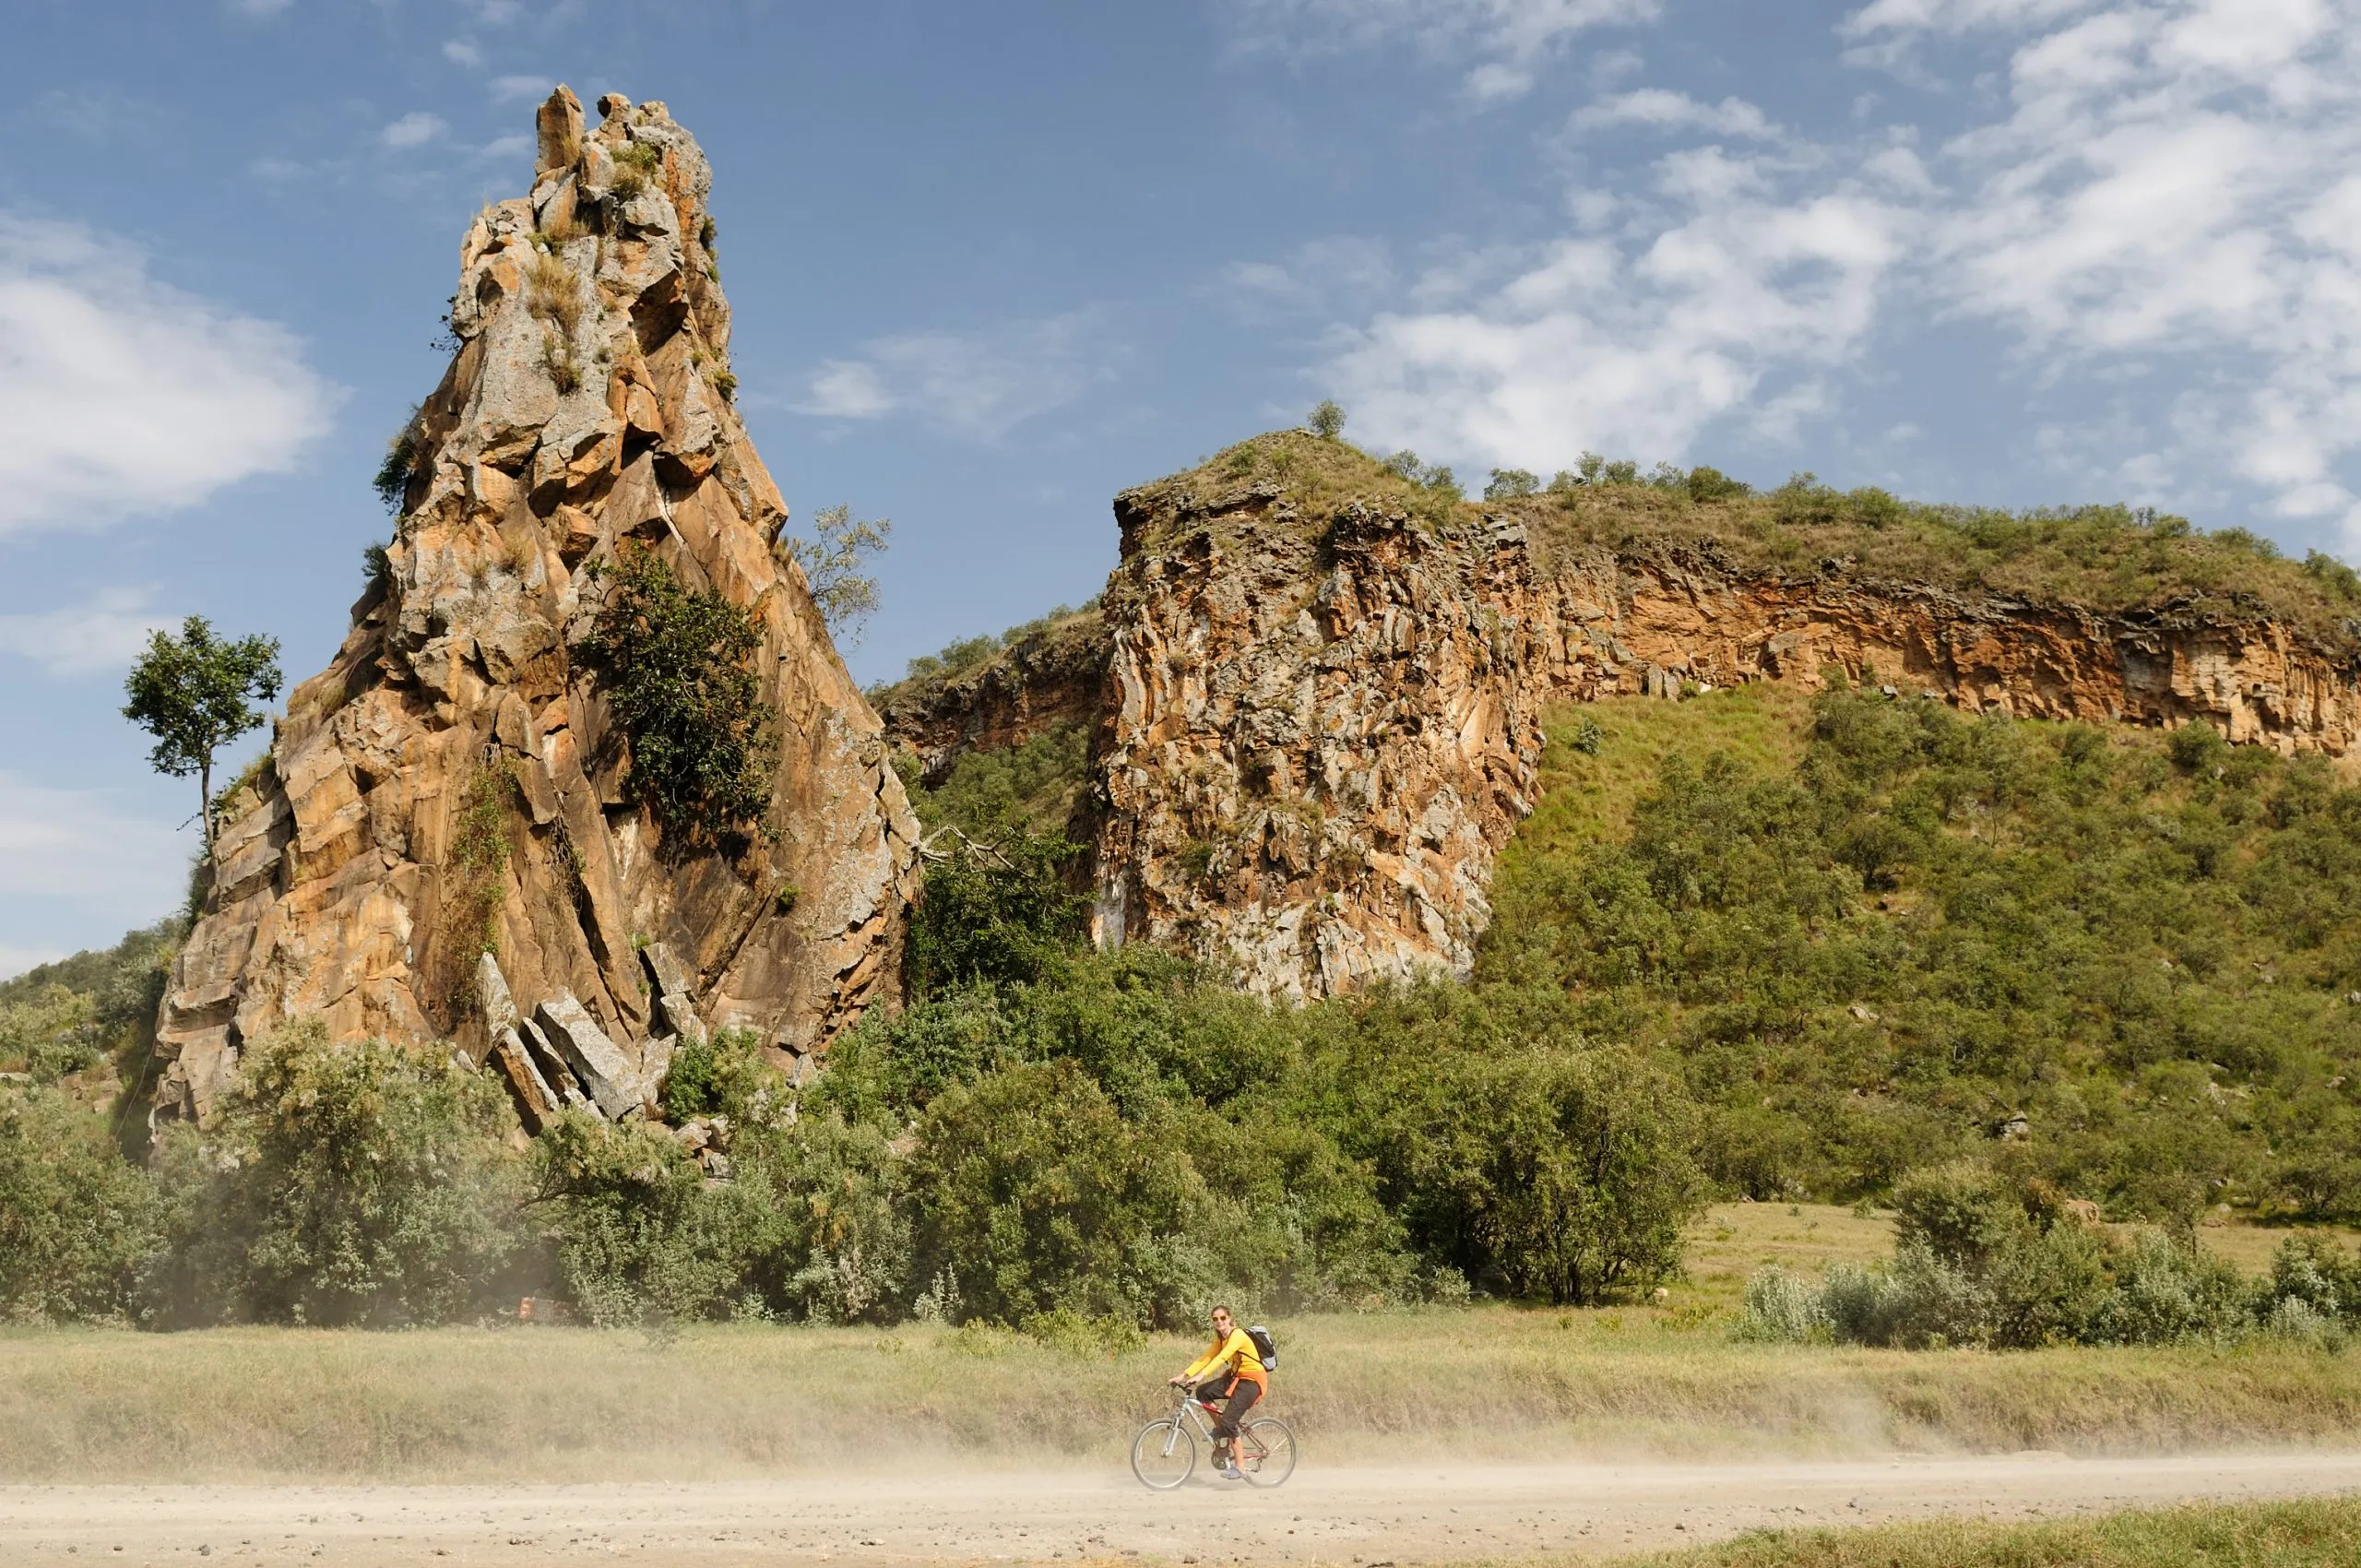 Turisten cykler ved foden af Stark klippetårne i Hells Gate National Park i Kenya.